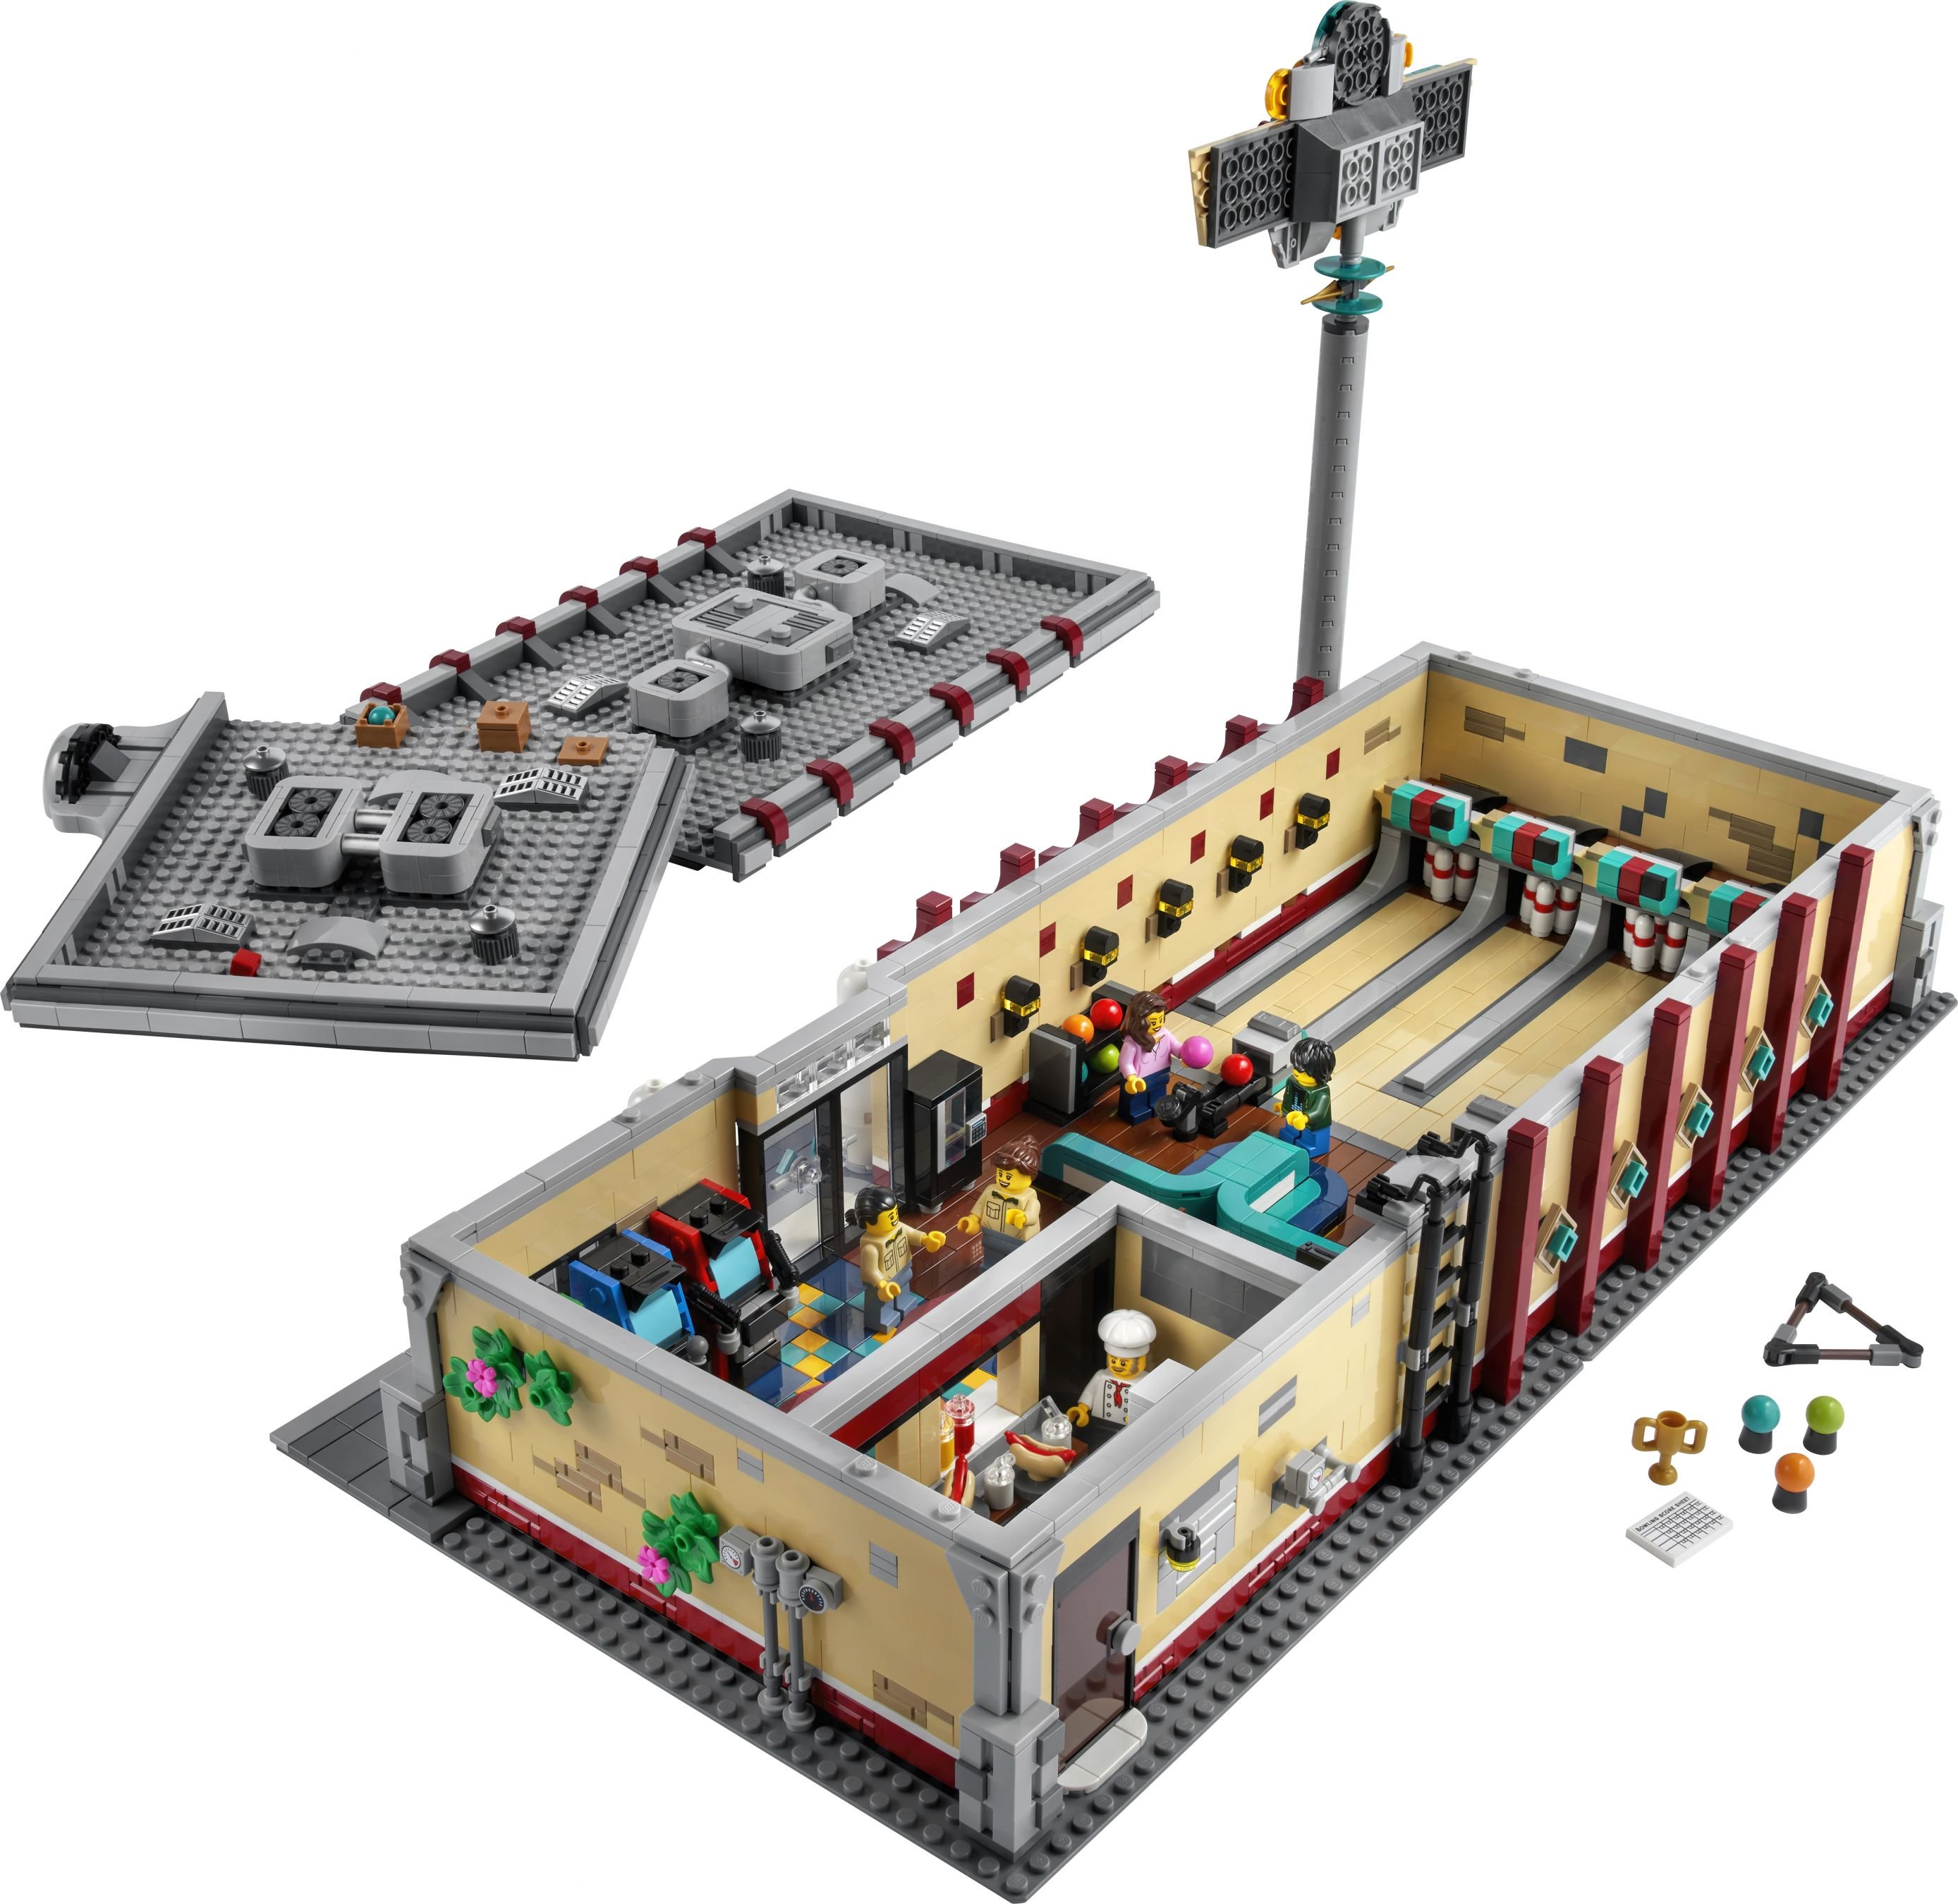 LEGO Bricklink 910013 Retro-Bowlingbahn LEGO_910013_back_01.jpg